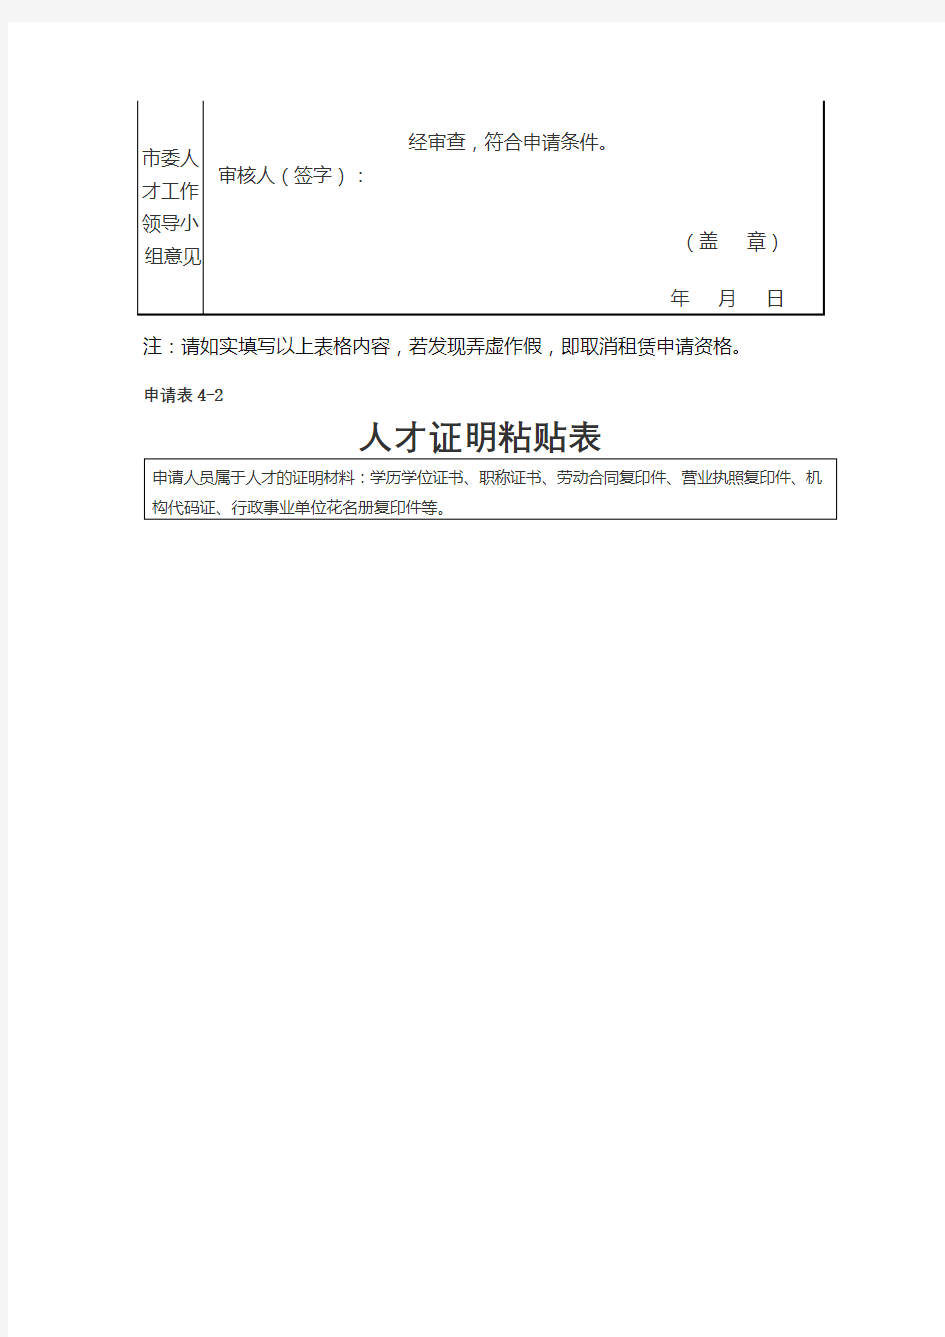 申请表4-1九江市人才公寓租住申请审核表【模板】